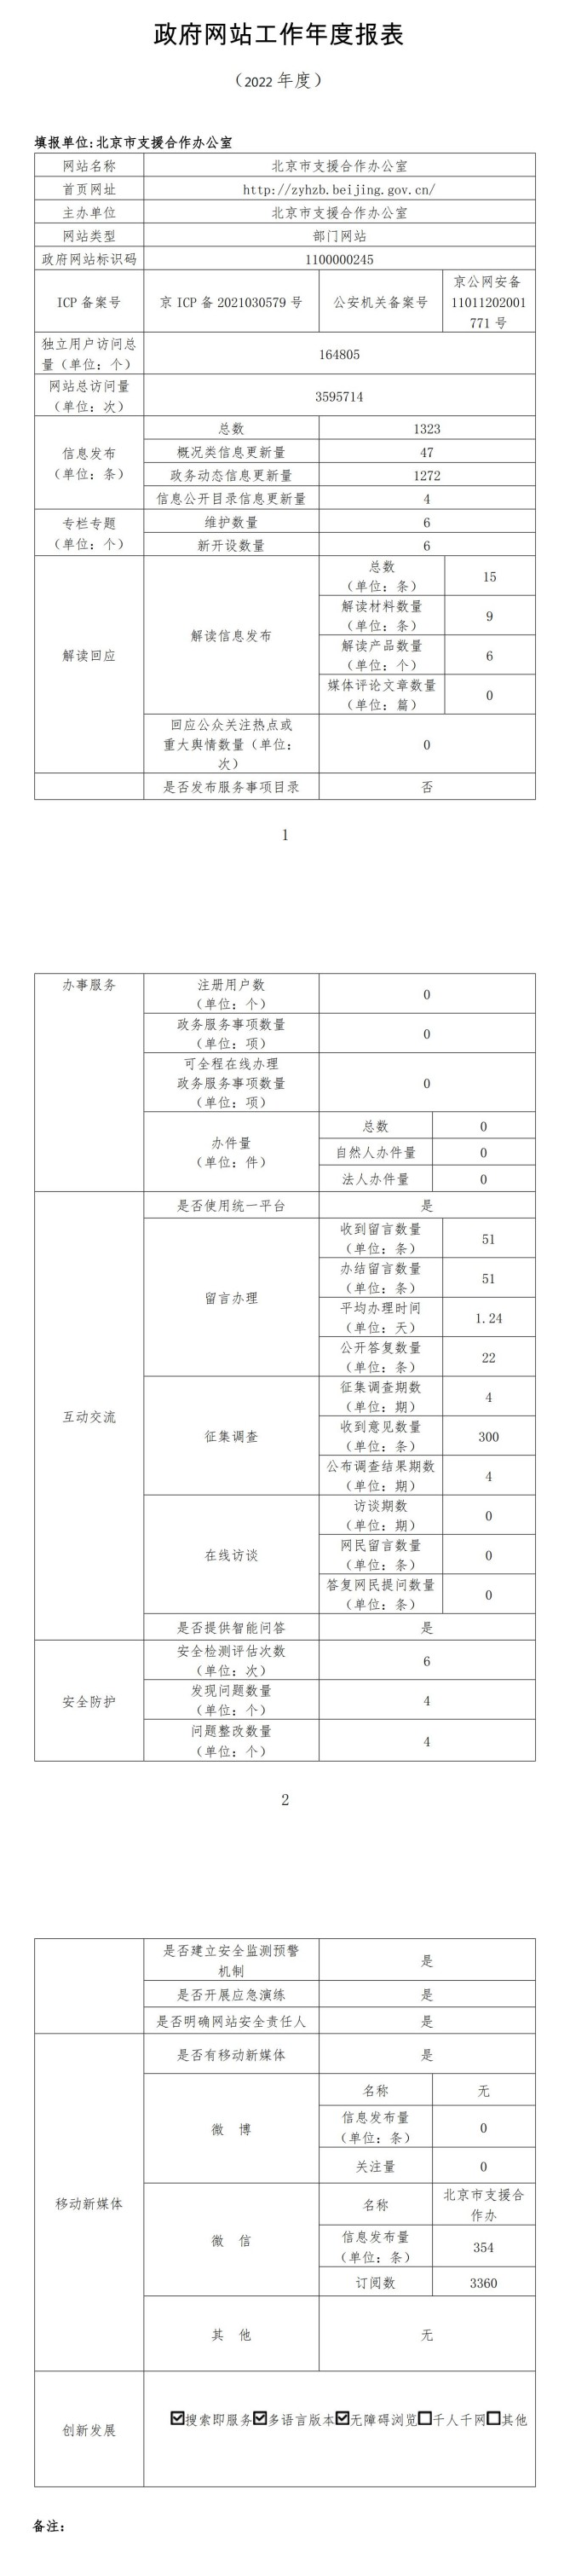 北京市支援合作办公室网站年度工作报表 (2022年度）